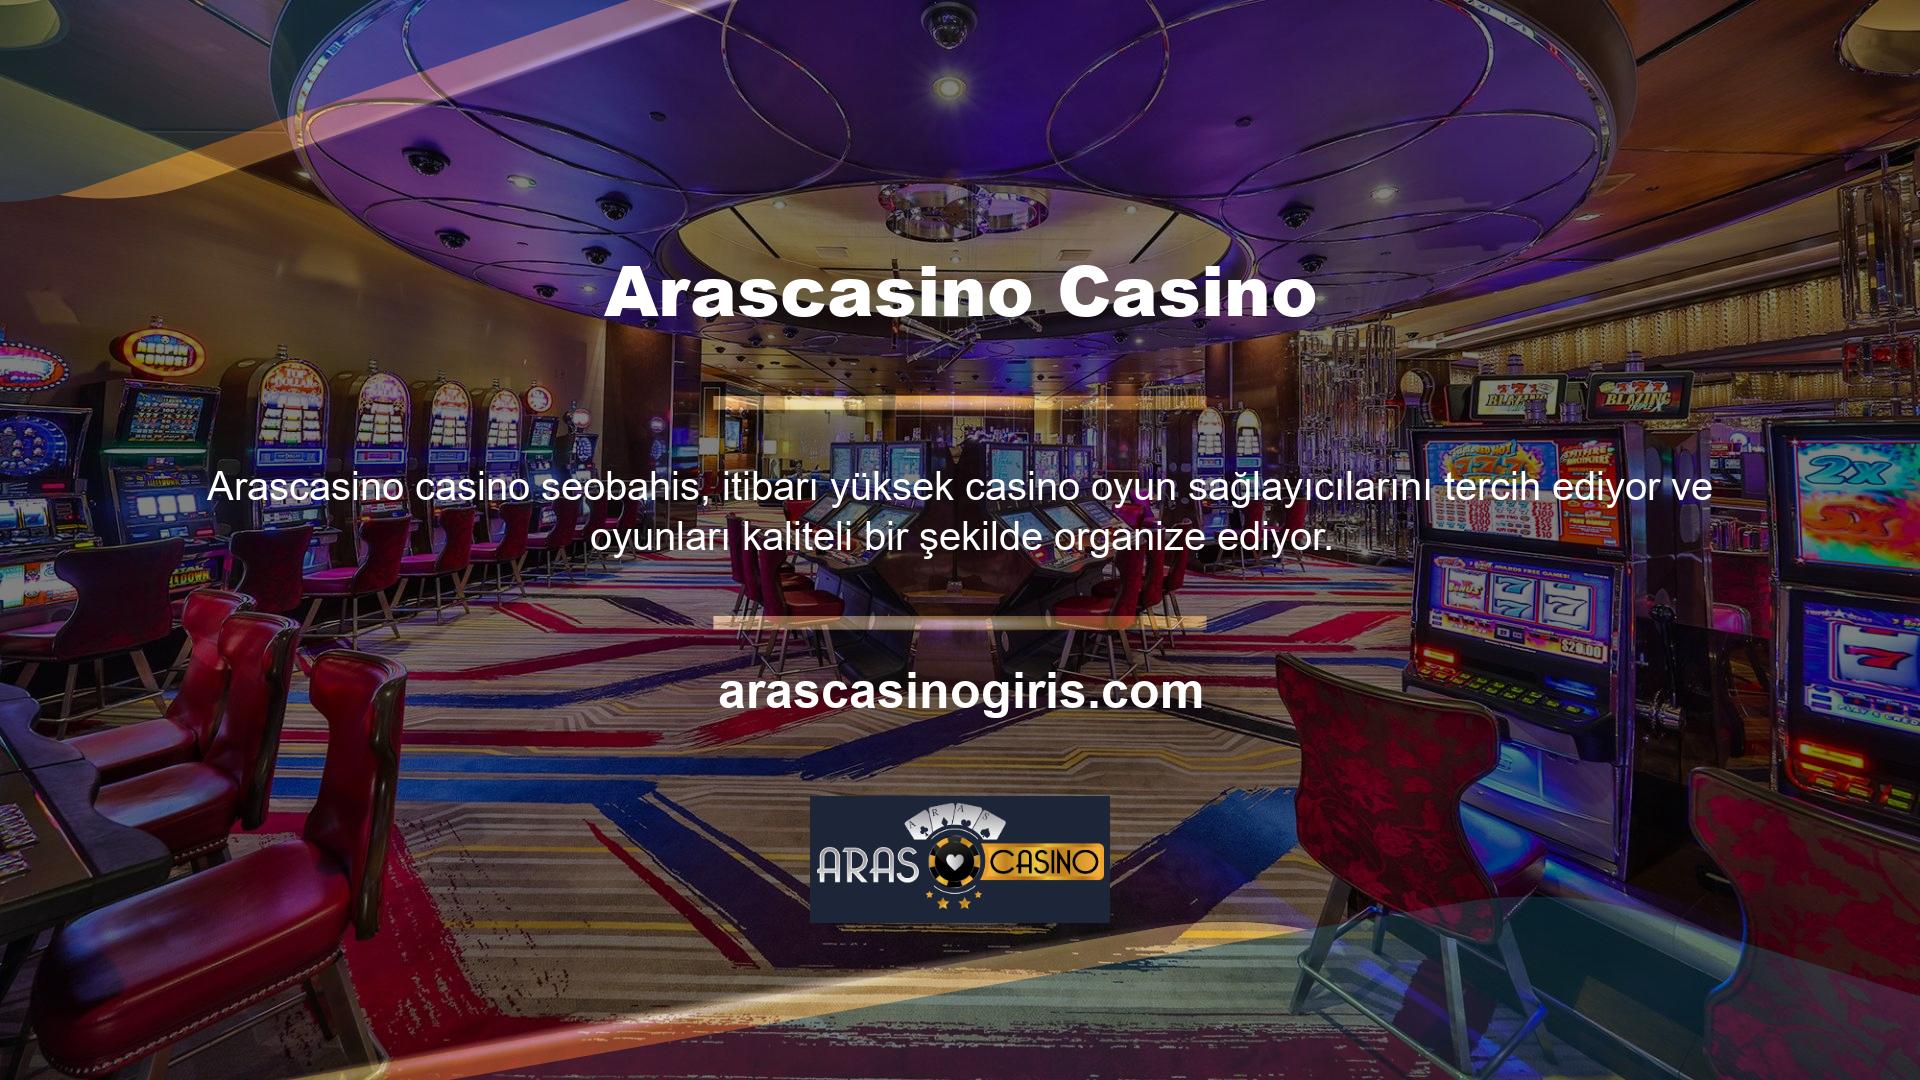 Casinoda çok sayıda kart oyunu, masa oyunu, platform oyunu ve slot bulunmaktadır